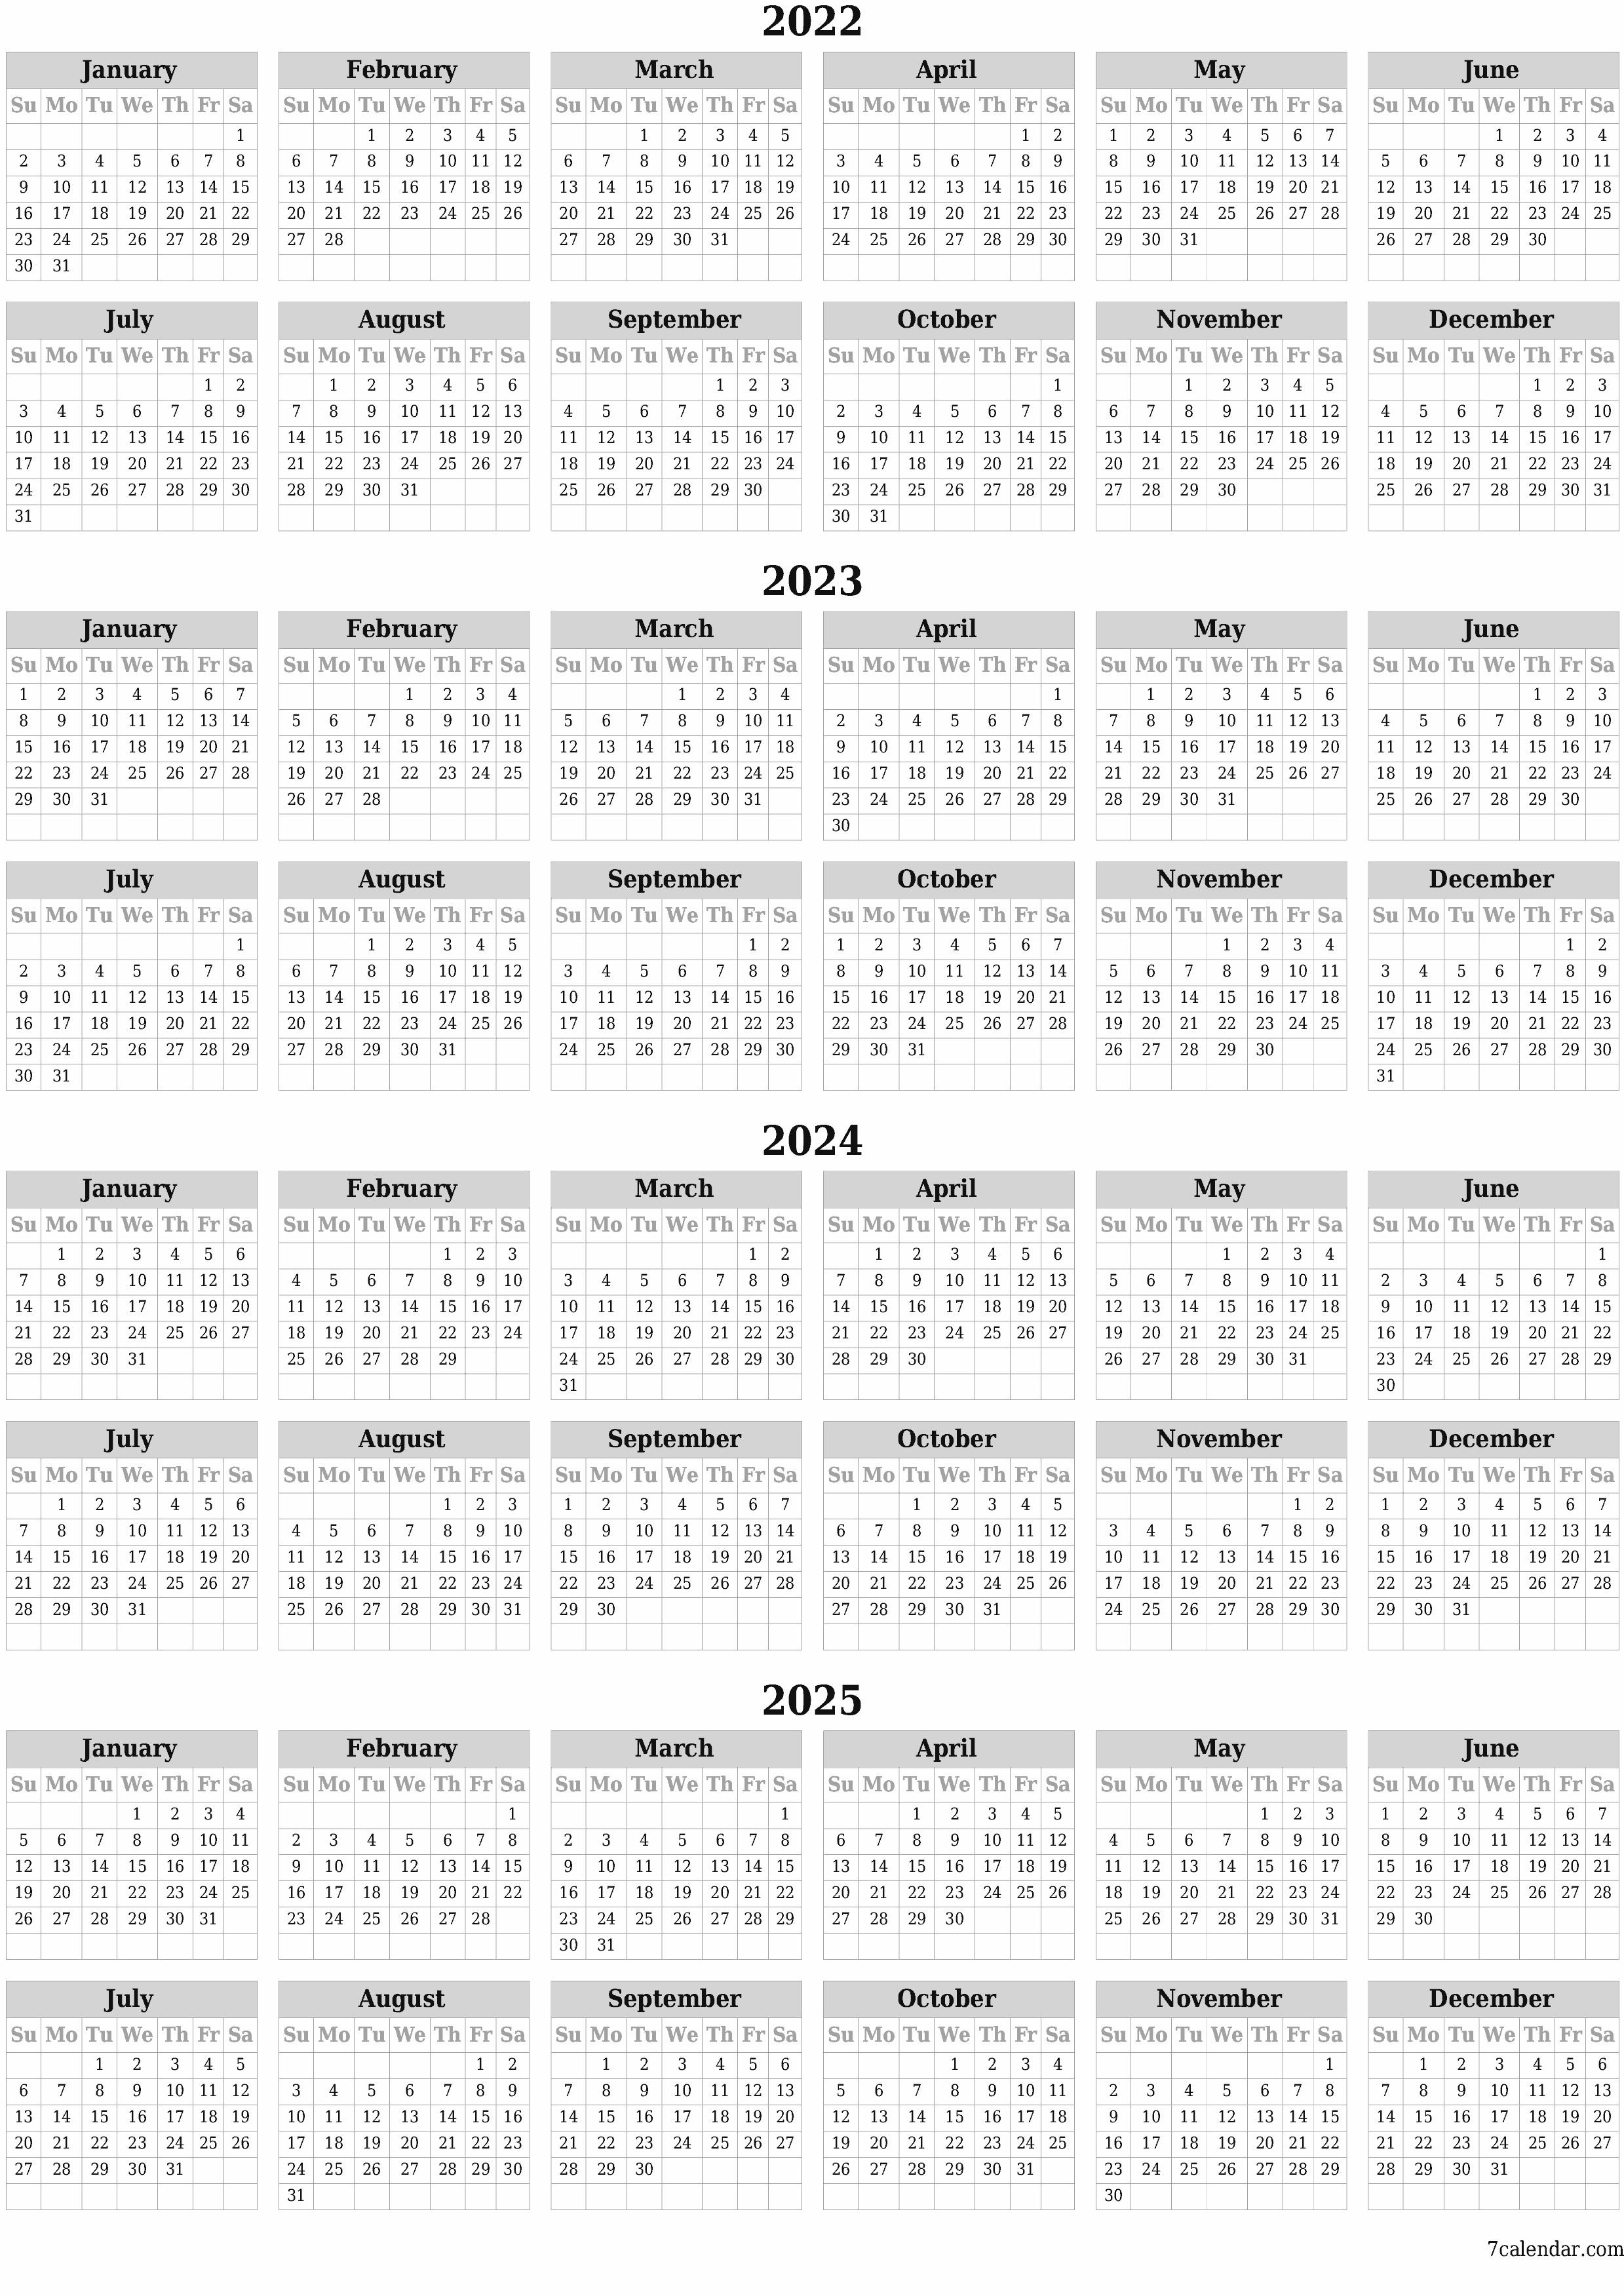 Blank calendar 2022, 2023, 2024, 2025